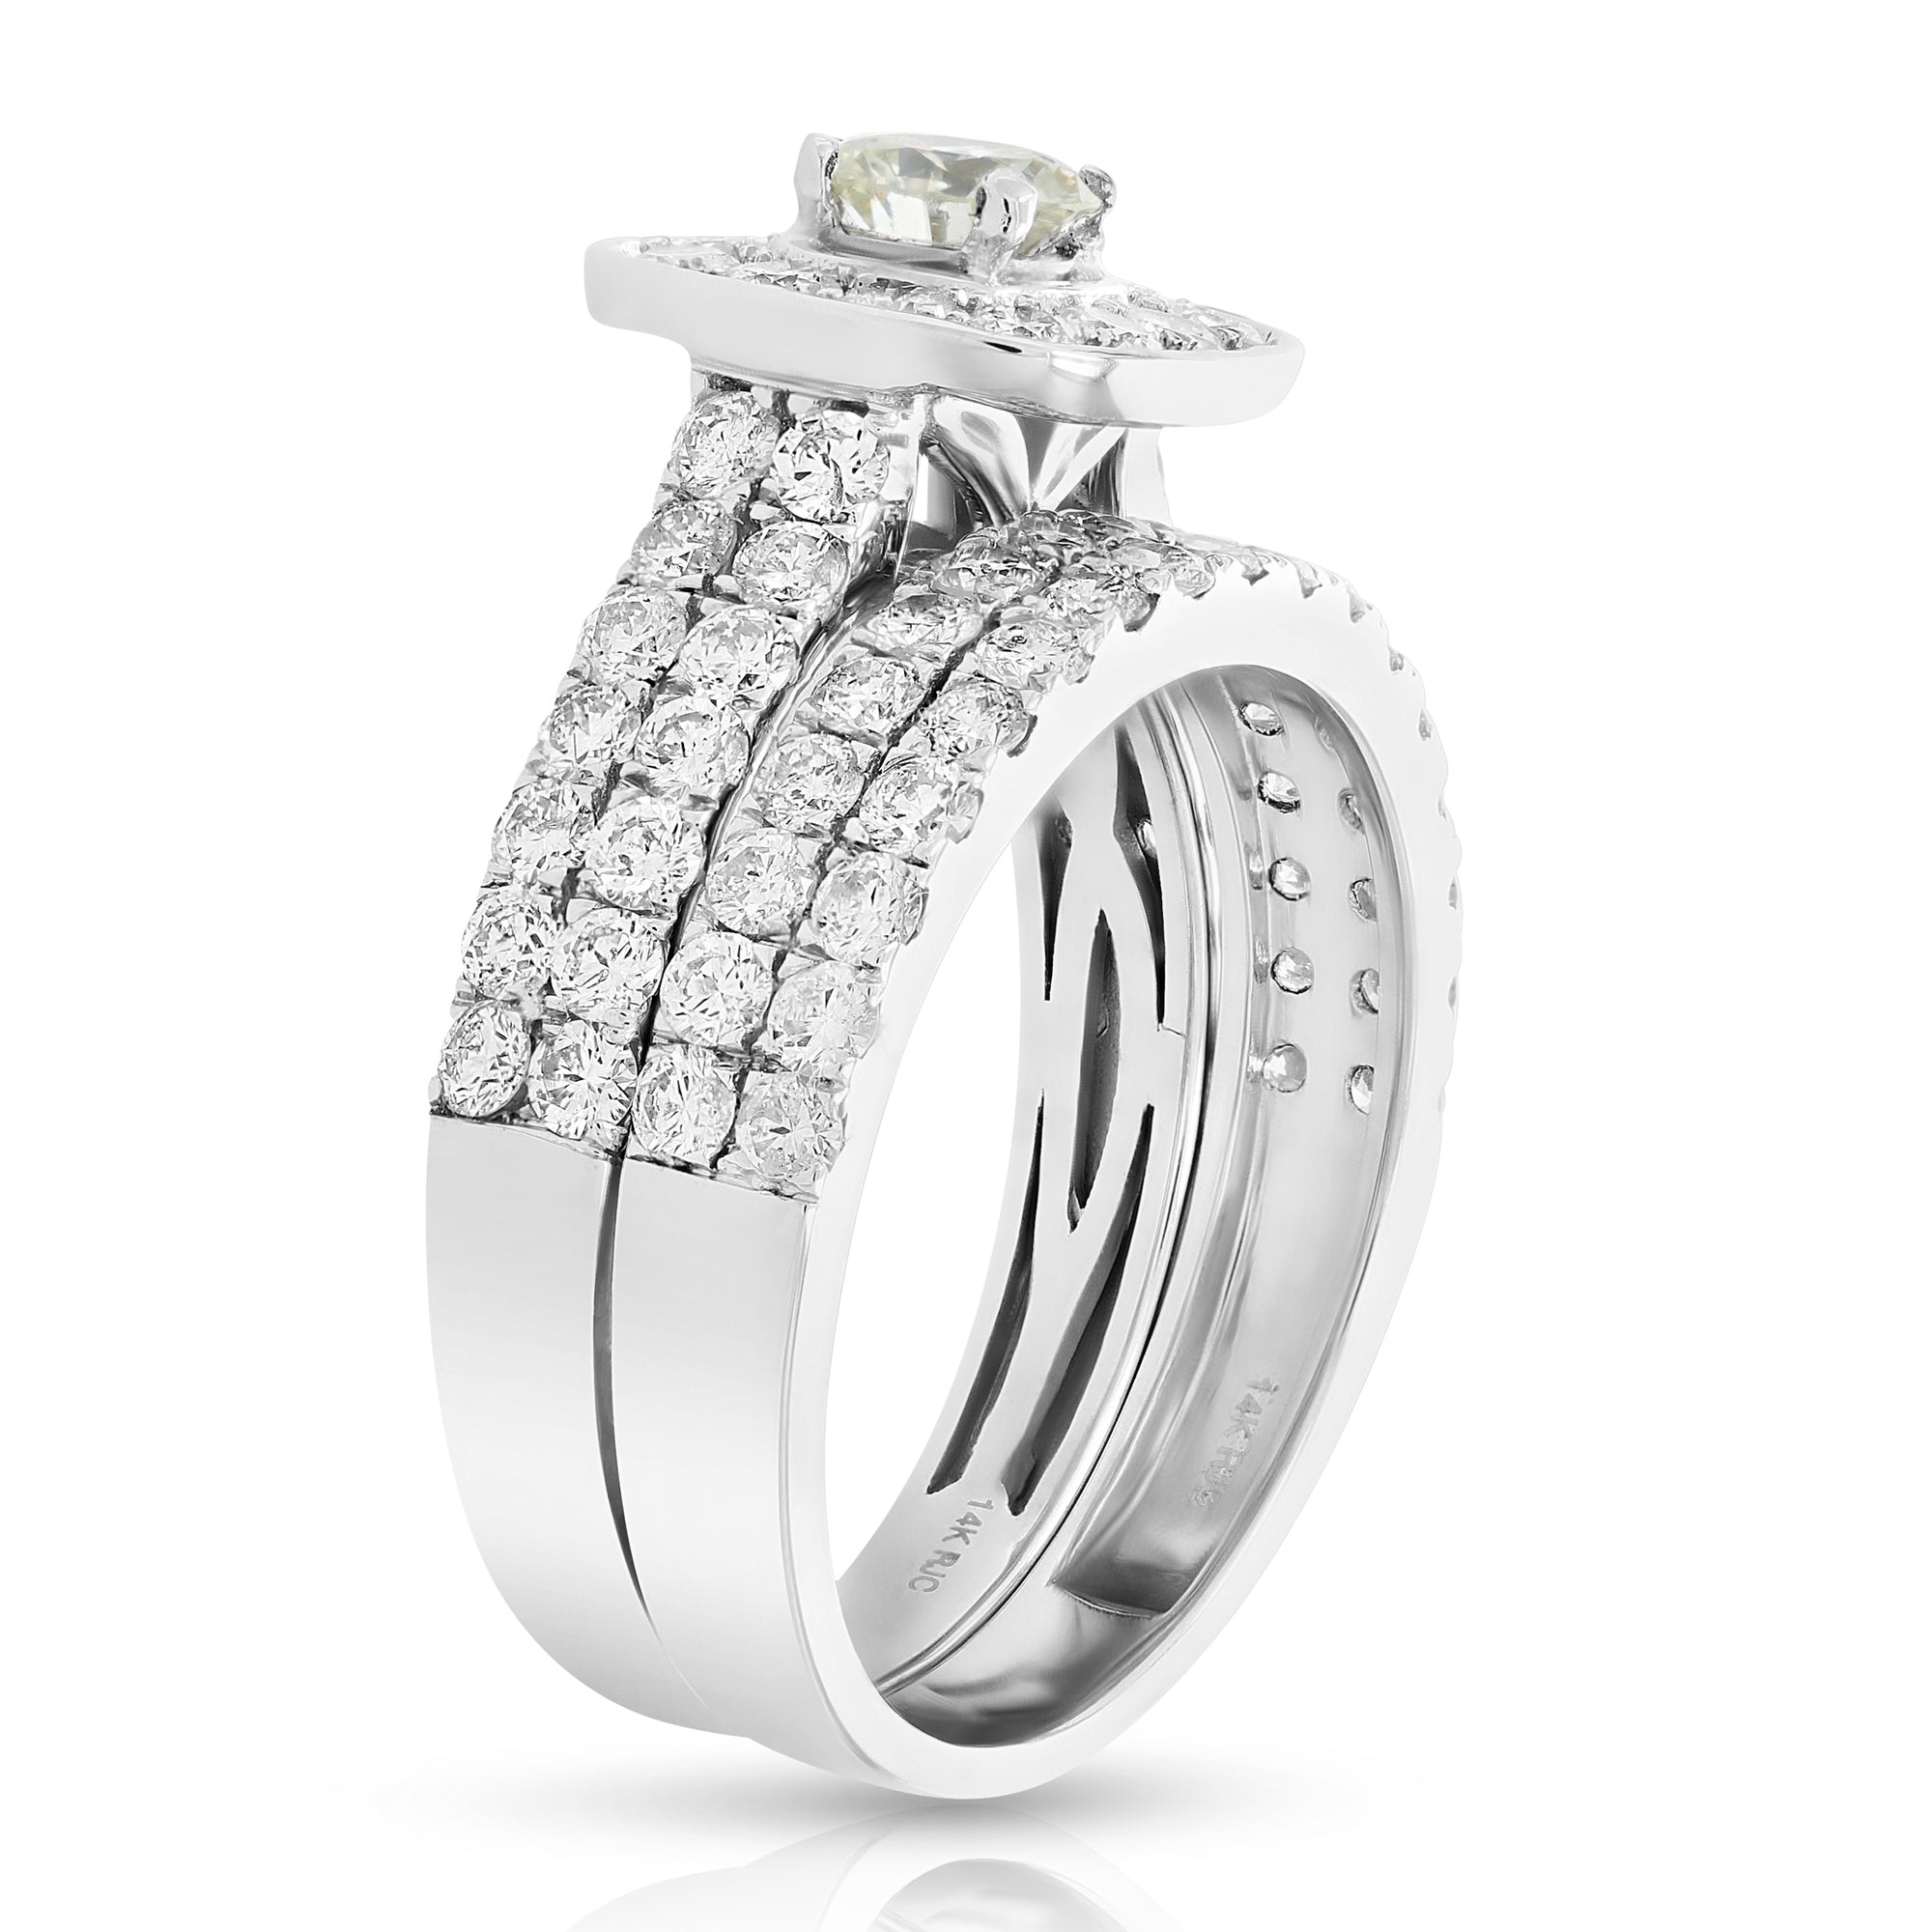 2 cttw Diamond Wedding Engagement Ring Set 14K White Gold Bridal Style Cushion